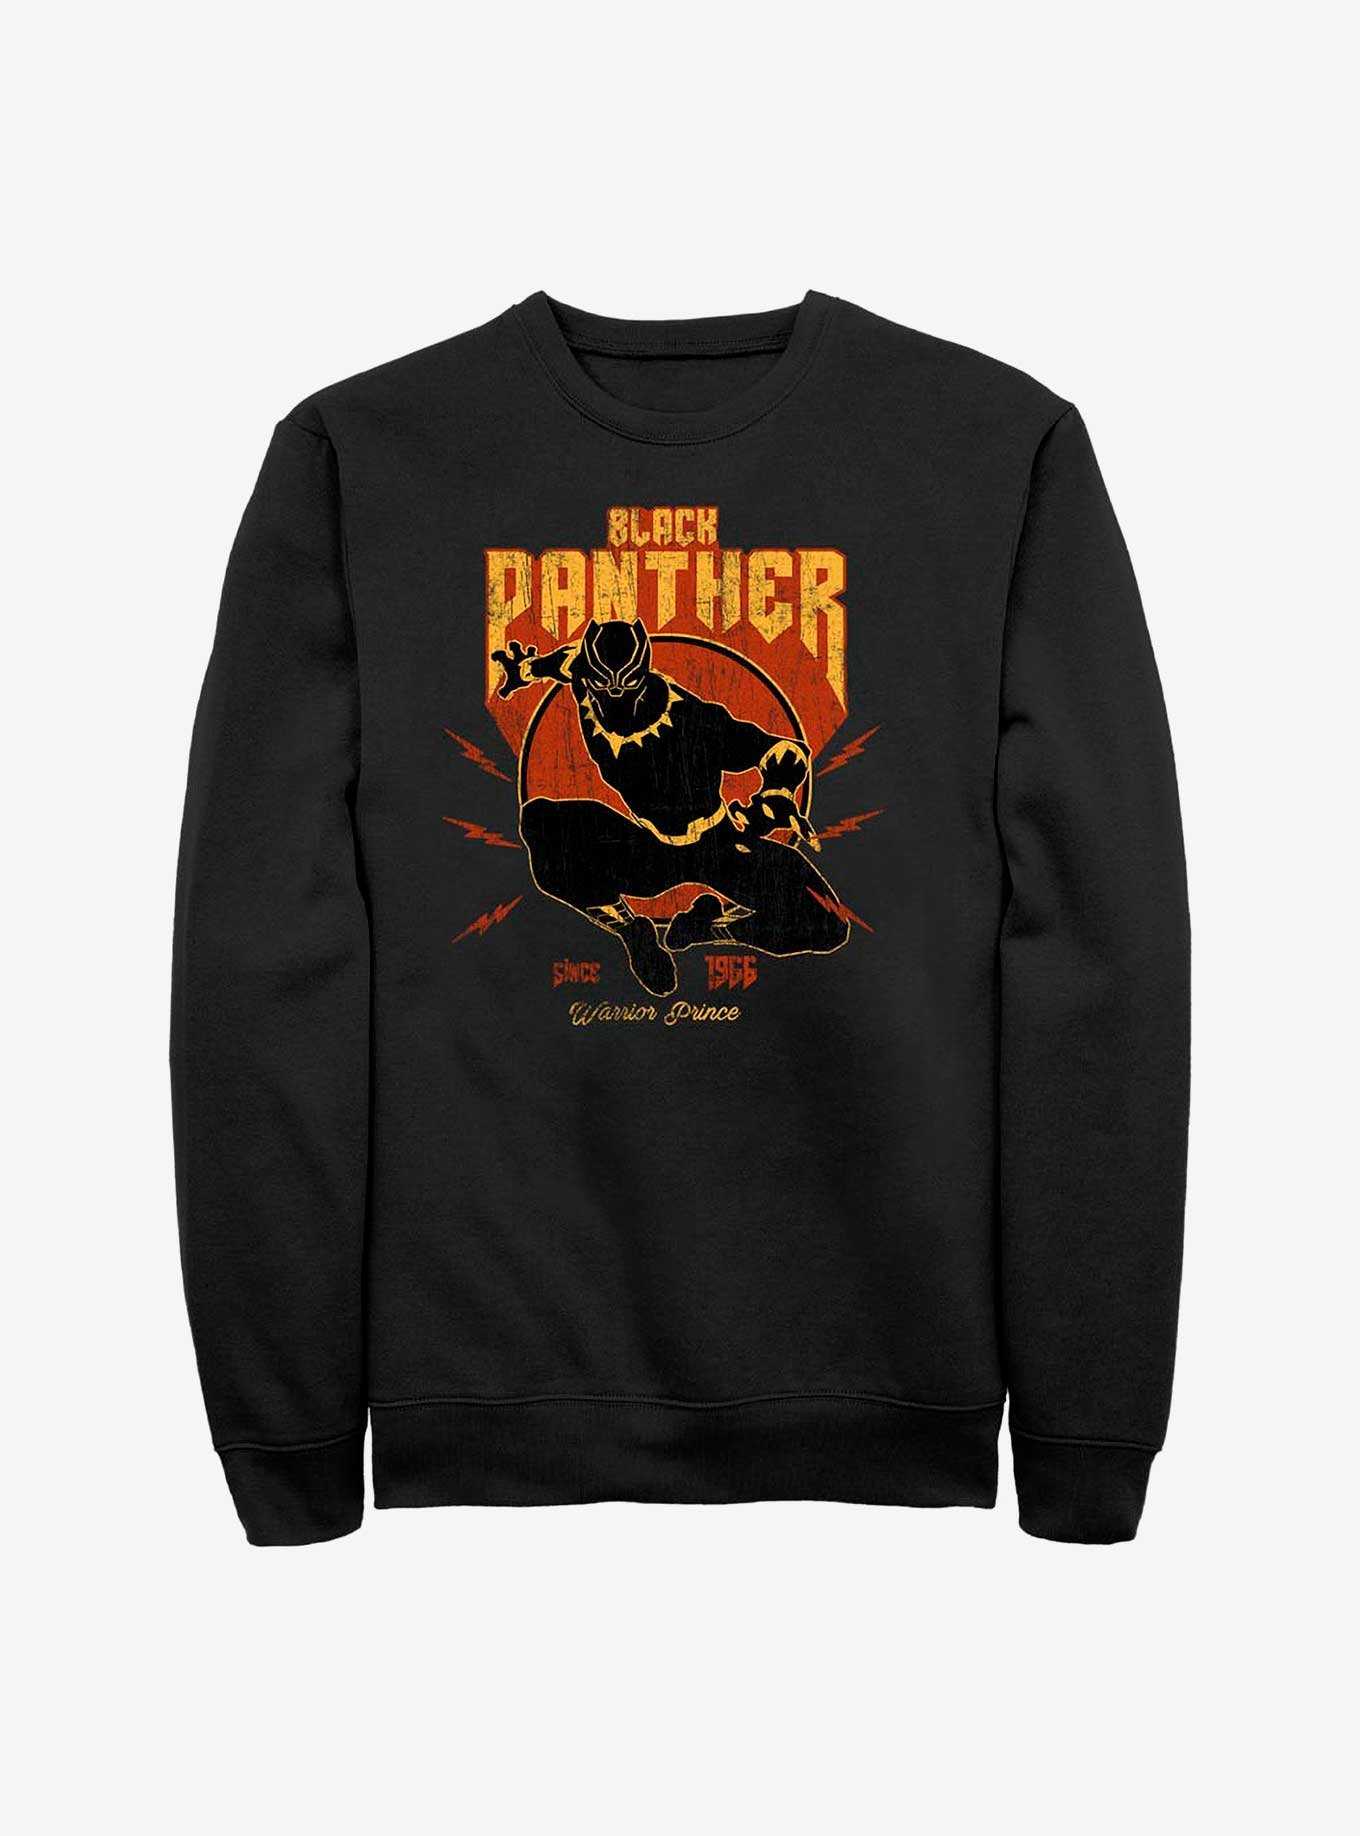 Marvel Black Panther Warrior Prince Since 1966 Sweatshirt, , hi-res